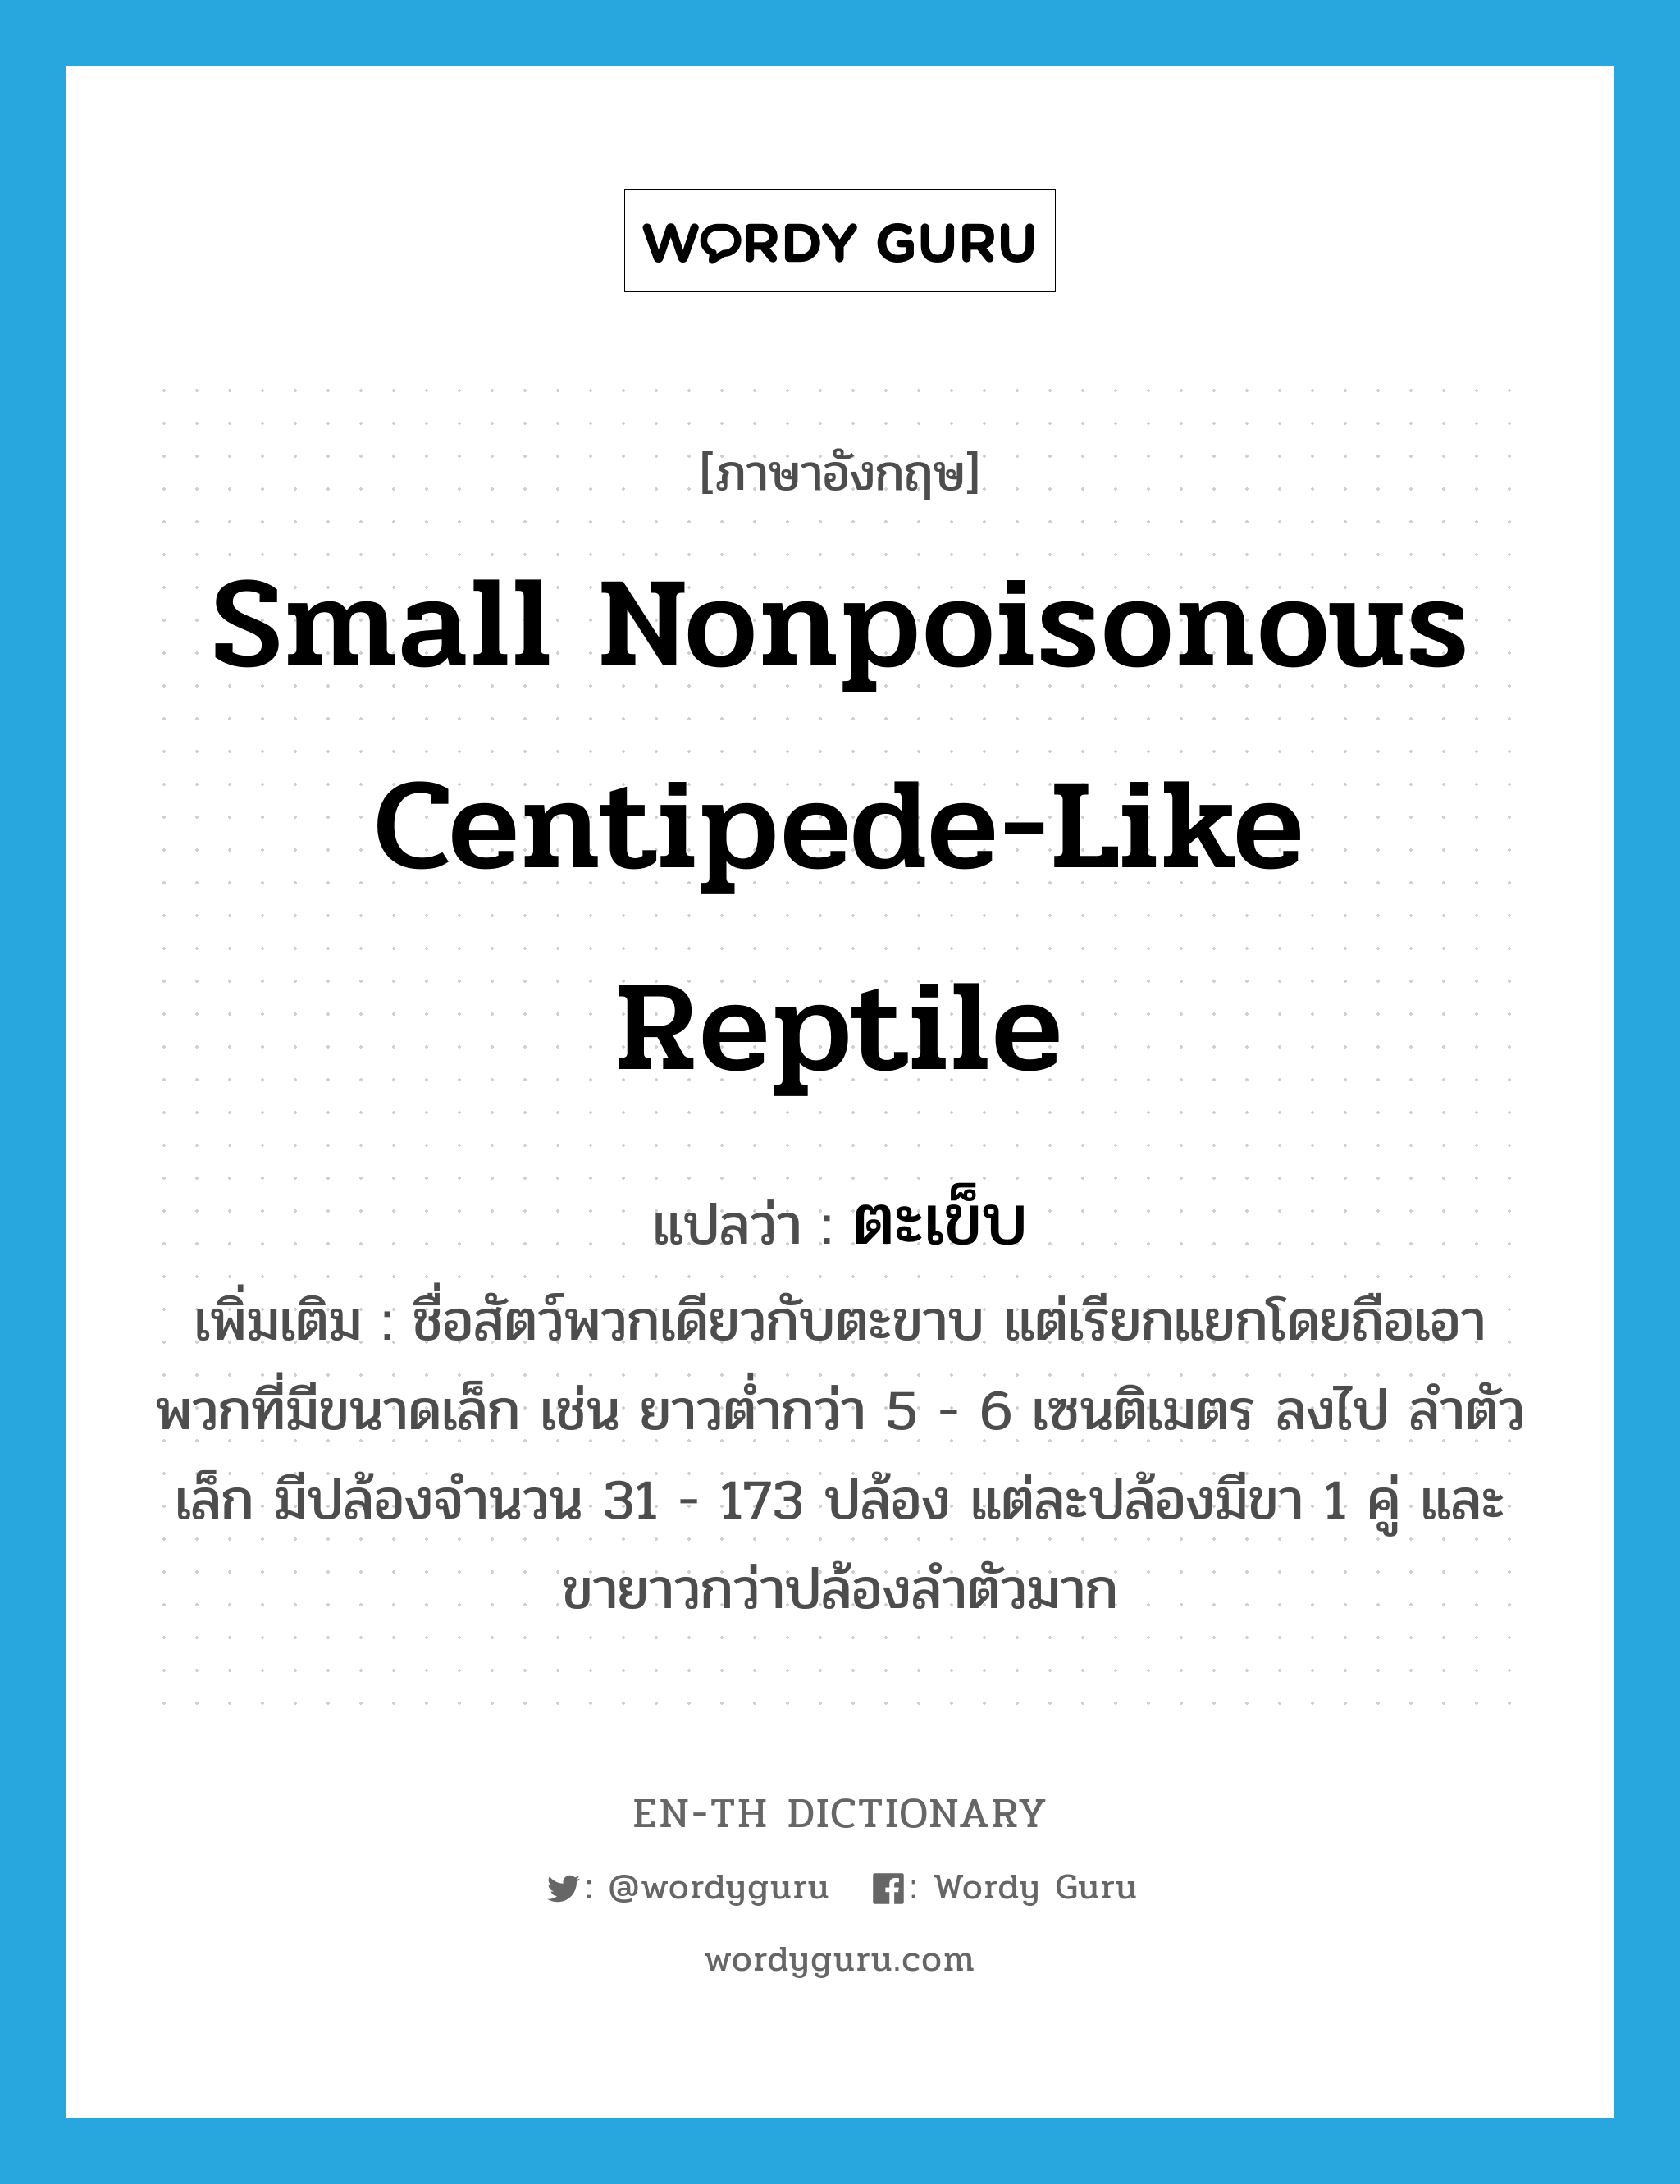 small nonpoisonous centipede-like reptile แปลว่า?, คำศัพท์ภาษาอังกฤษ small nonpoisonous centipede-like reptile แปลว่า ตะเข็บ ประเภท N เพิ่มเติม ชื่อสัตว์พวกเดียวกับตะขาบ แต่เรียกแยกโดยถือเอาพวกที่มีขนาดเล็ก เช่น ยาวต่ำกว่า 5 - 6 เซนติเมตร ลงไป ลำตัวเล็ก มีปล้องจำนวน 31 - 173 ปล้อง แต่ละปล้องมีขา 1 คู่ และขายาวกว่าปล้องลำตัวมาก หมวด N